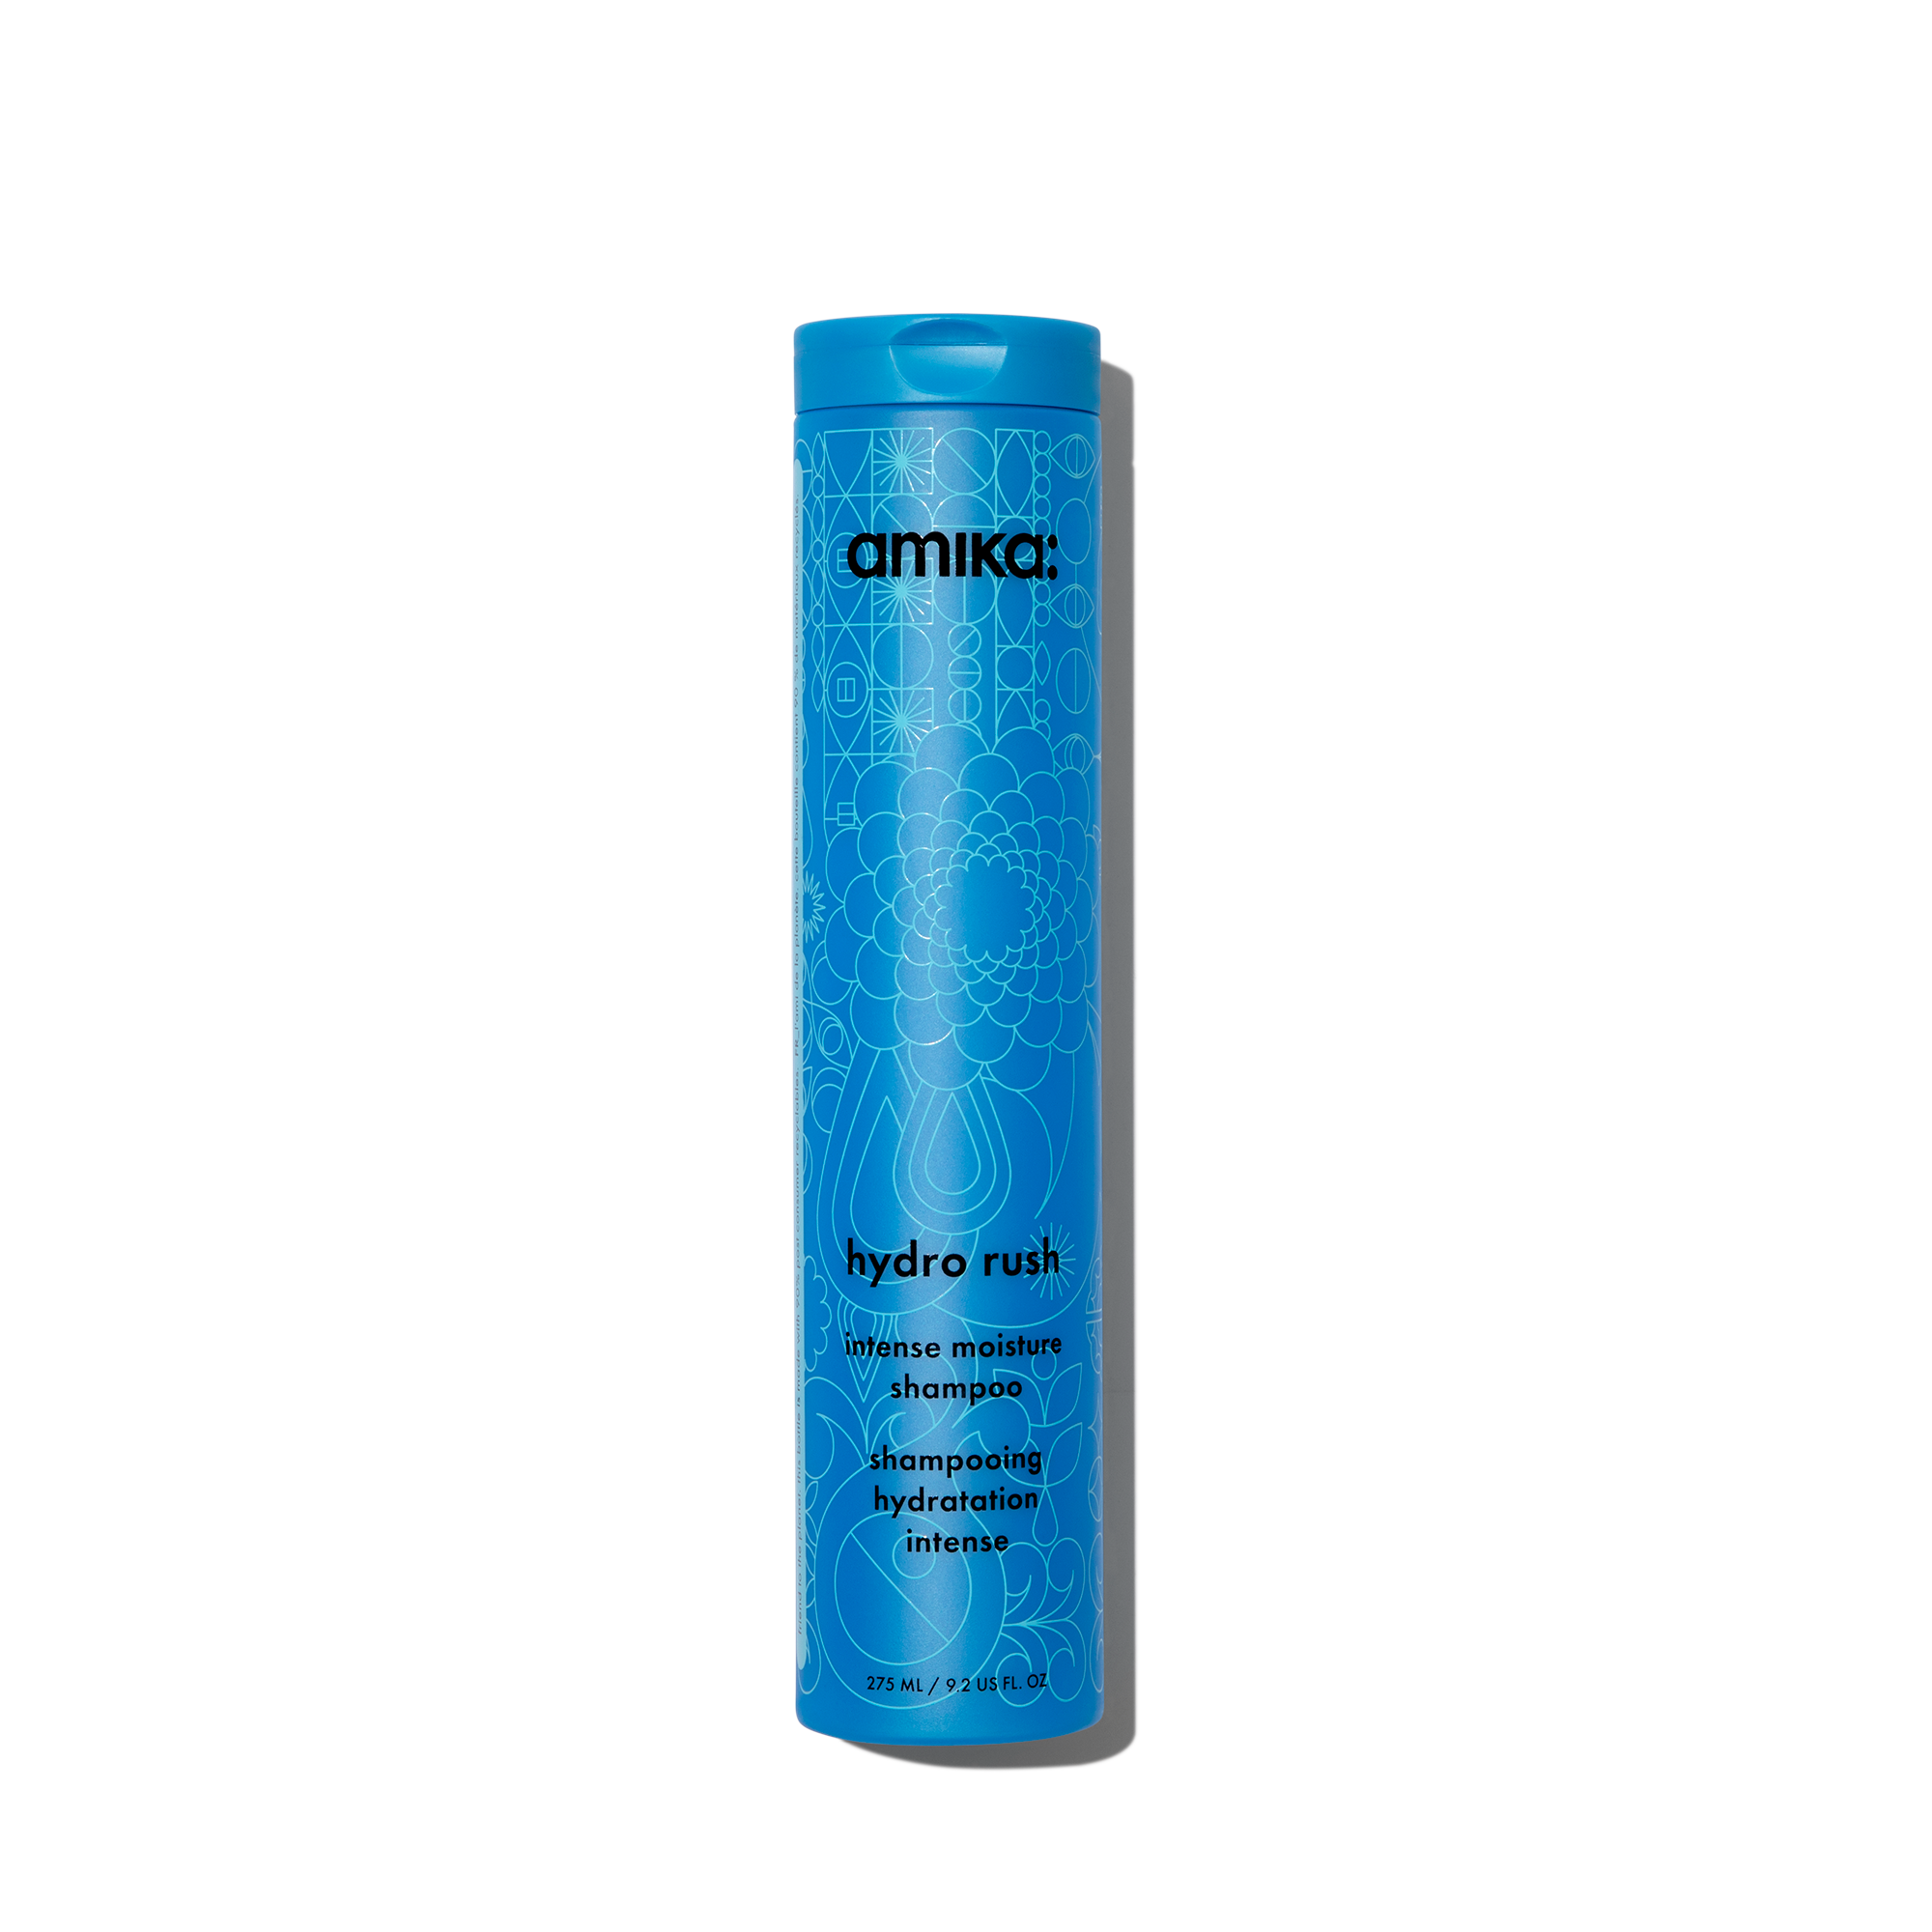 Amika Hydro rush intense moisture shampoo, 9.2 OZ